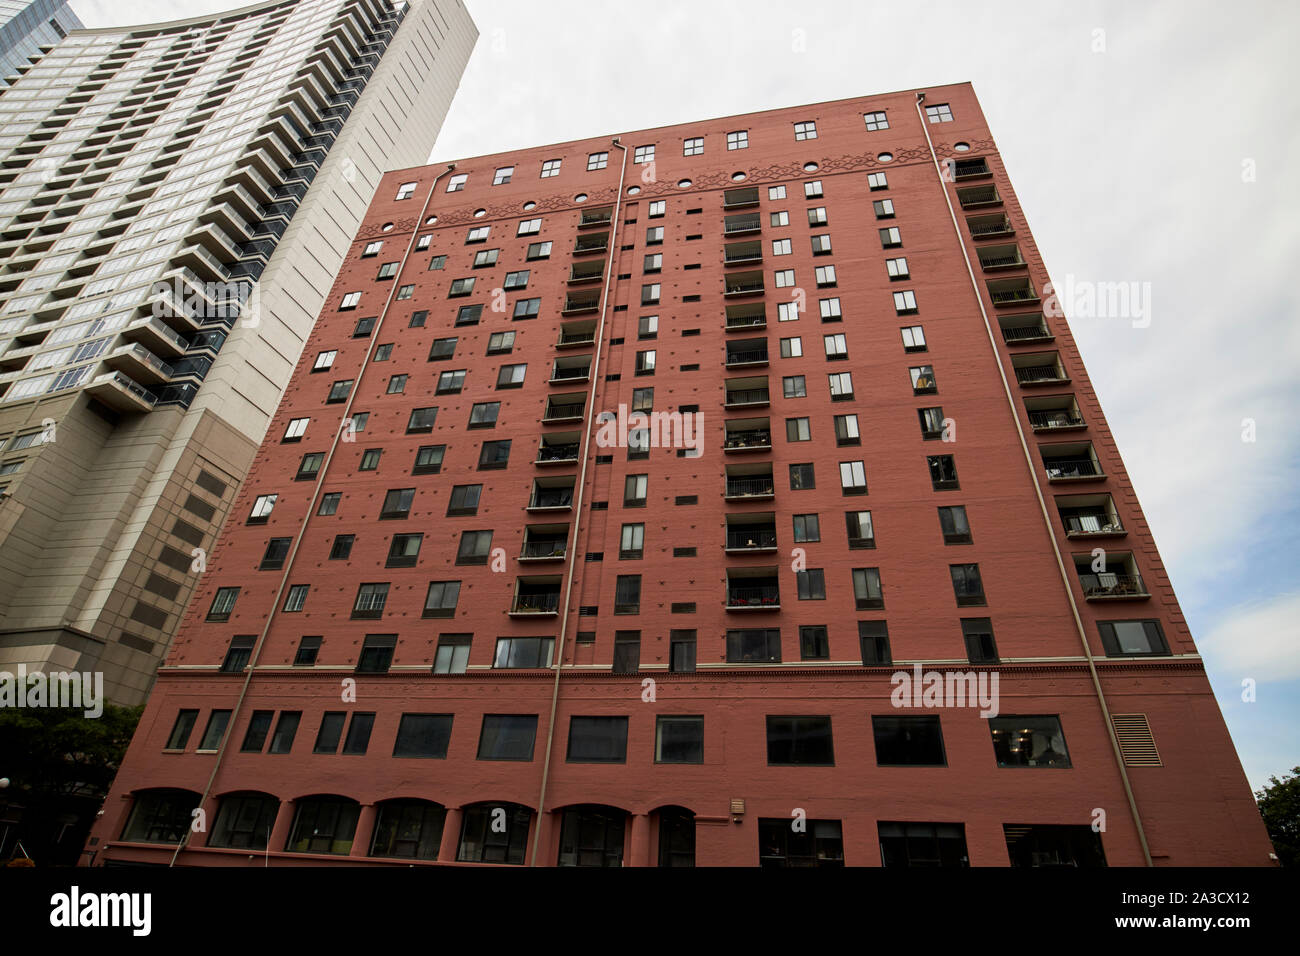 Fulton house ancien entrepôt de stockage froid maintenant transformé en logements en copropriété Chicago Illinois Etats-Unis d'Amérique Banque D'Images